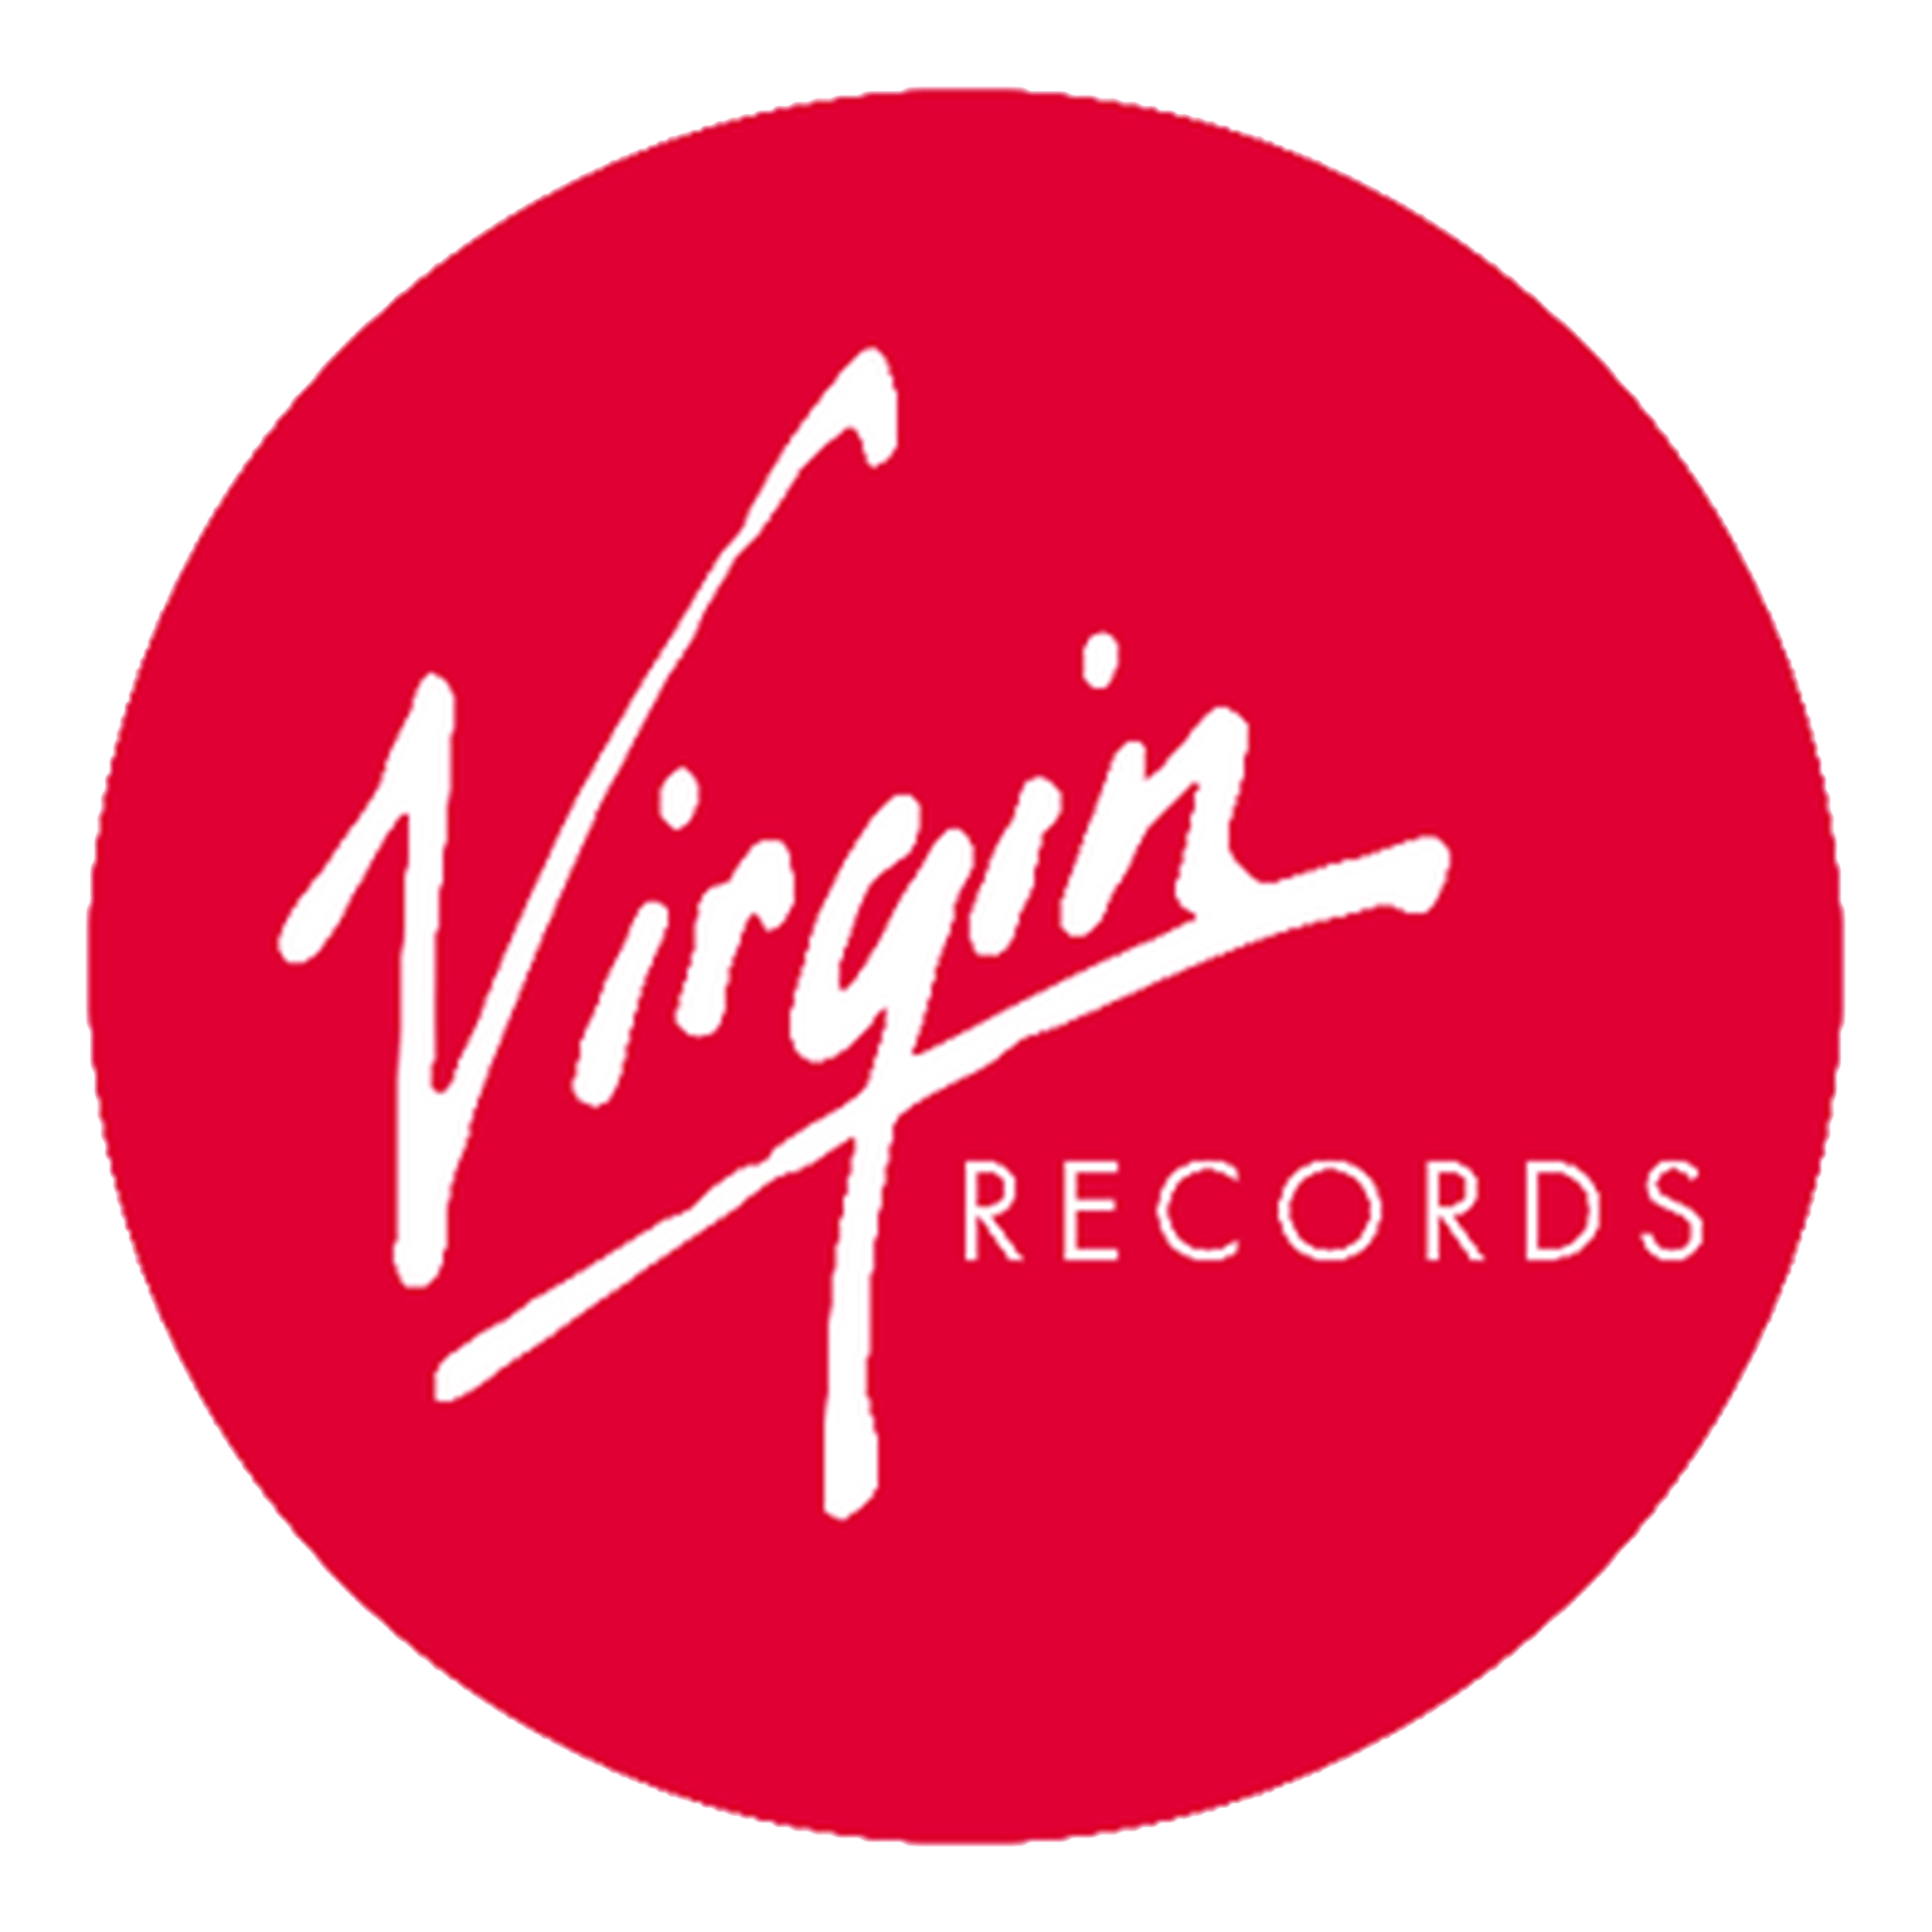 Выпускающий лейбл. Логотип Virgin. Virgin records лейбл. Звукозаписывающие лейблы. Эмблемы музыкальных лейблов.